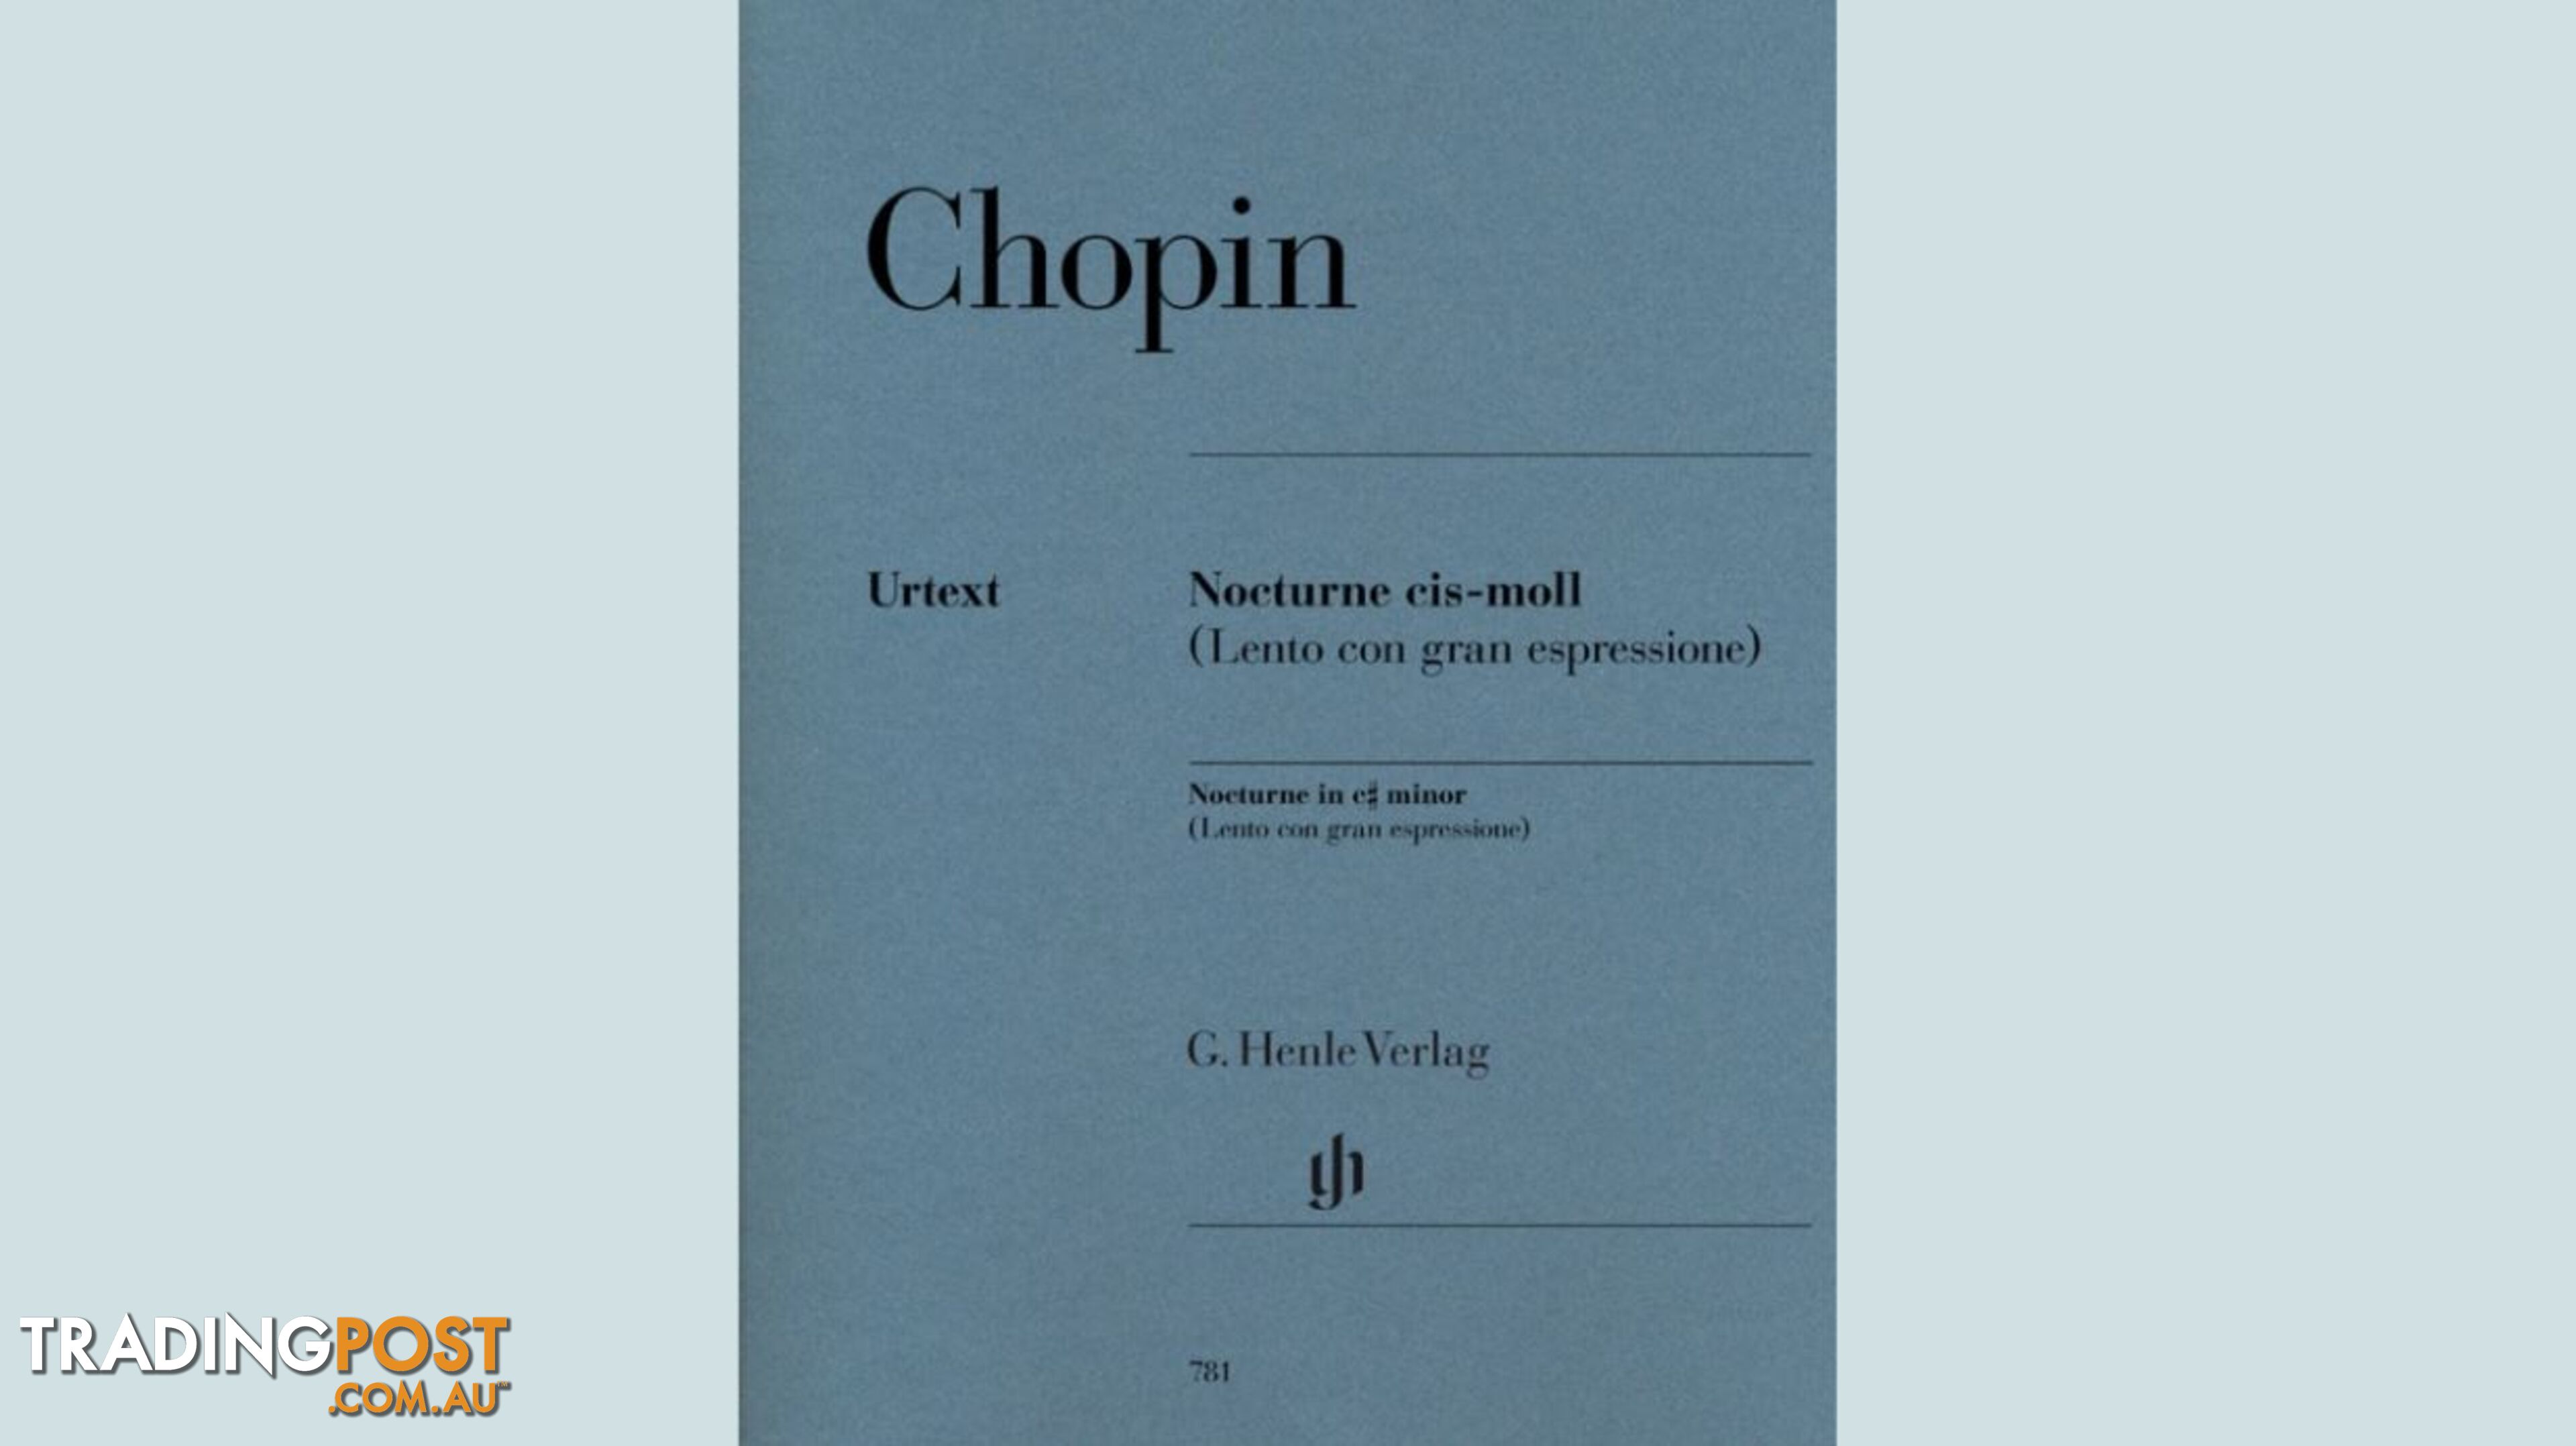 Chopin - Nocturne c sharp minor (Lento con gran espressione)